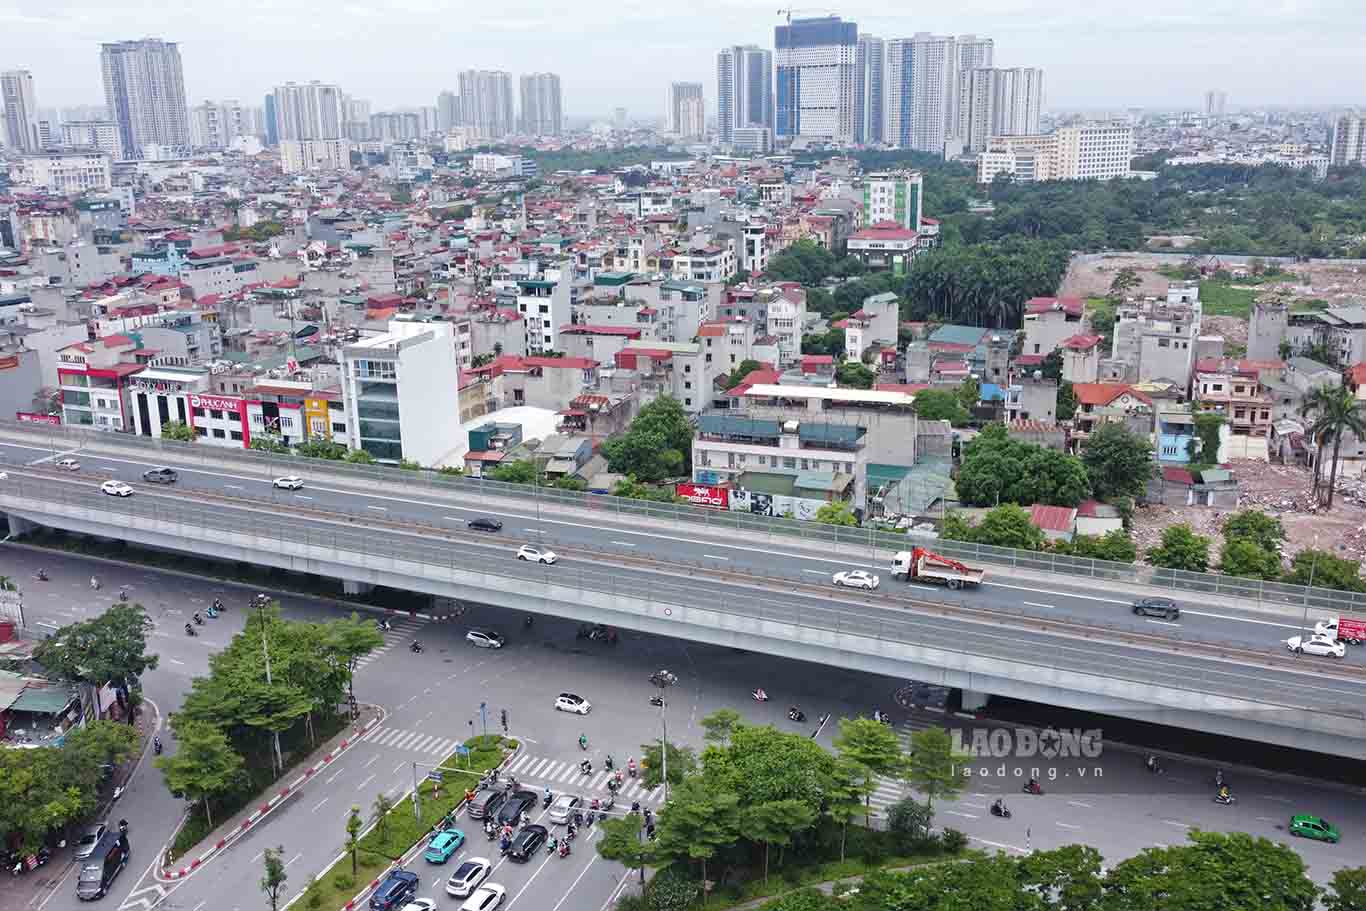 Cách vị trí trên khoảng 4km, Sở GTVT Hà Nội cũng đang nghiên cứu xây dựng hầm chui đường Hoàng Quốc Việt kéo dài với đường Phạm Văn Đồng và kết nối với phố Trần Vỹ.